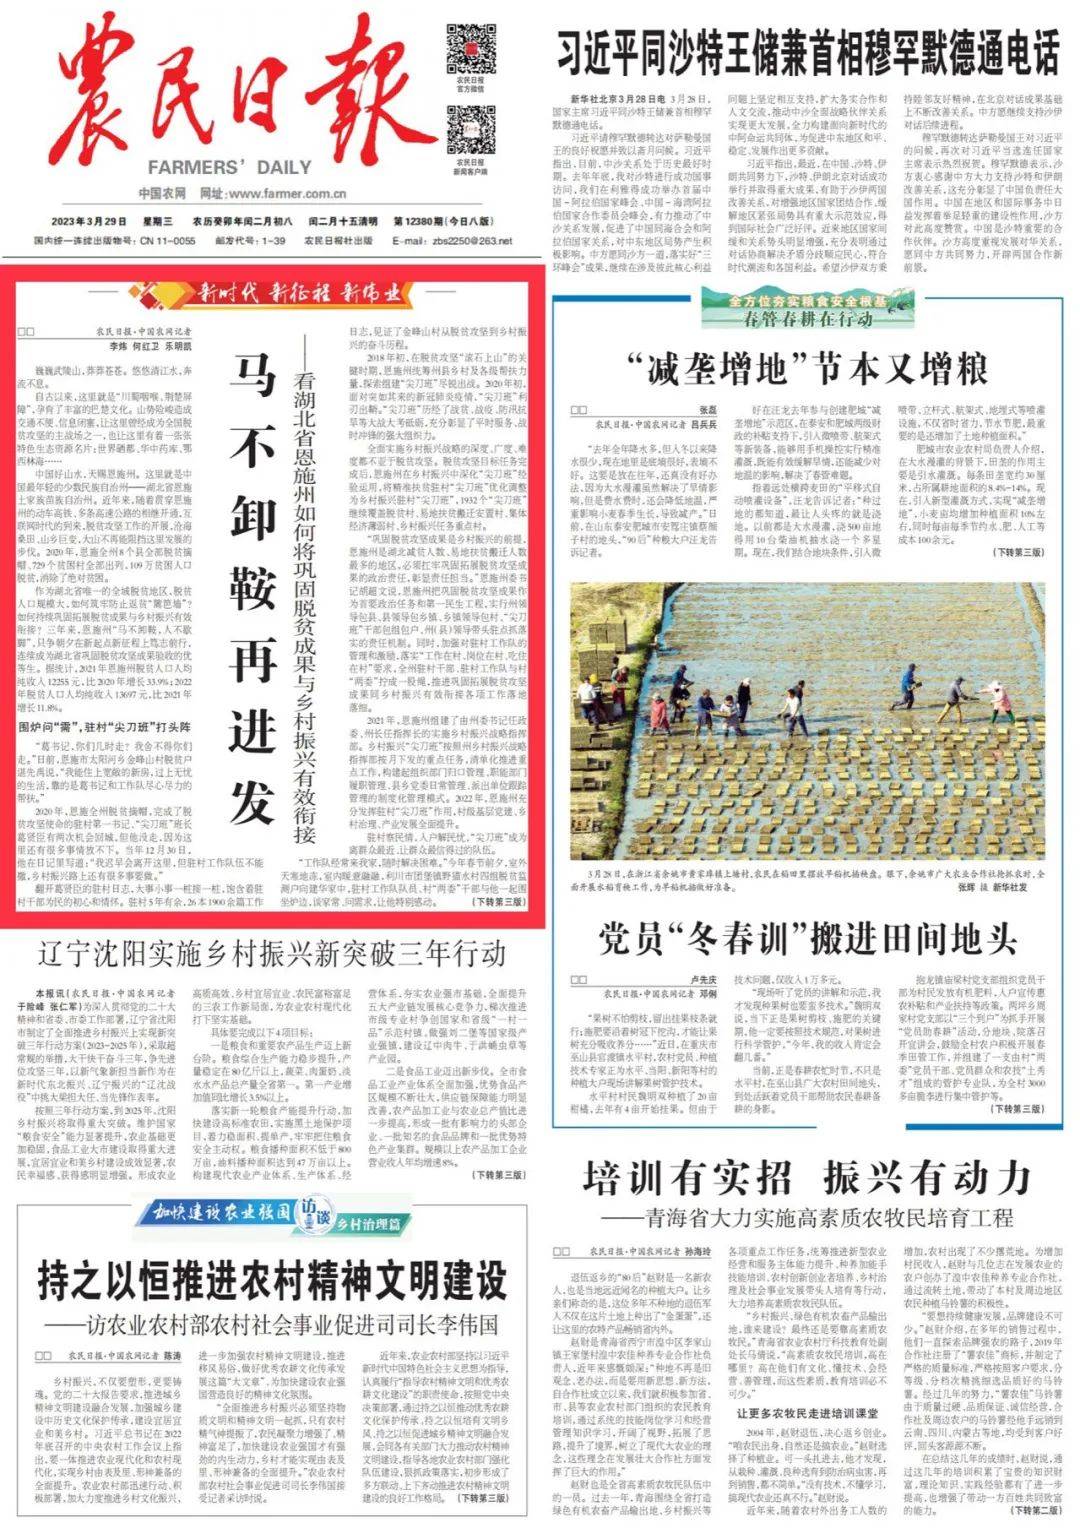 《人民日报》社会版头条聚焦杭州拱墅区多措并举补齐“幼有所育”短板的举措